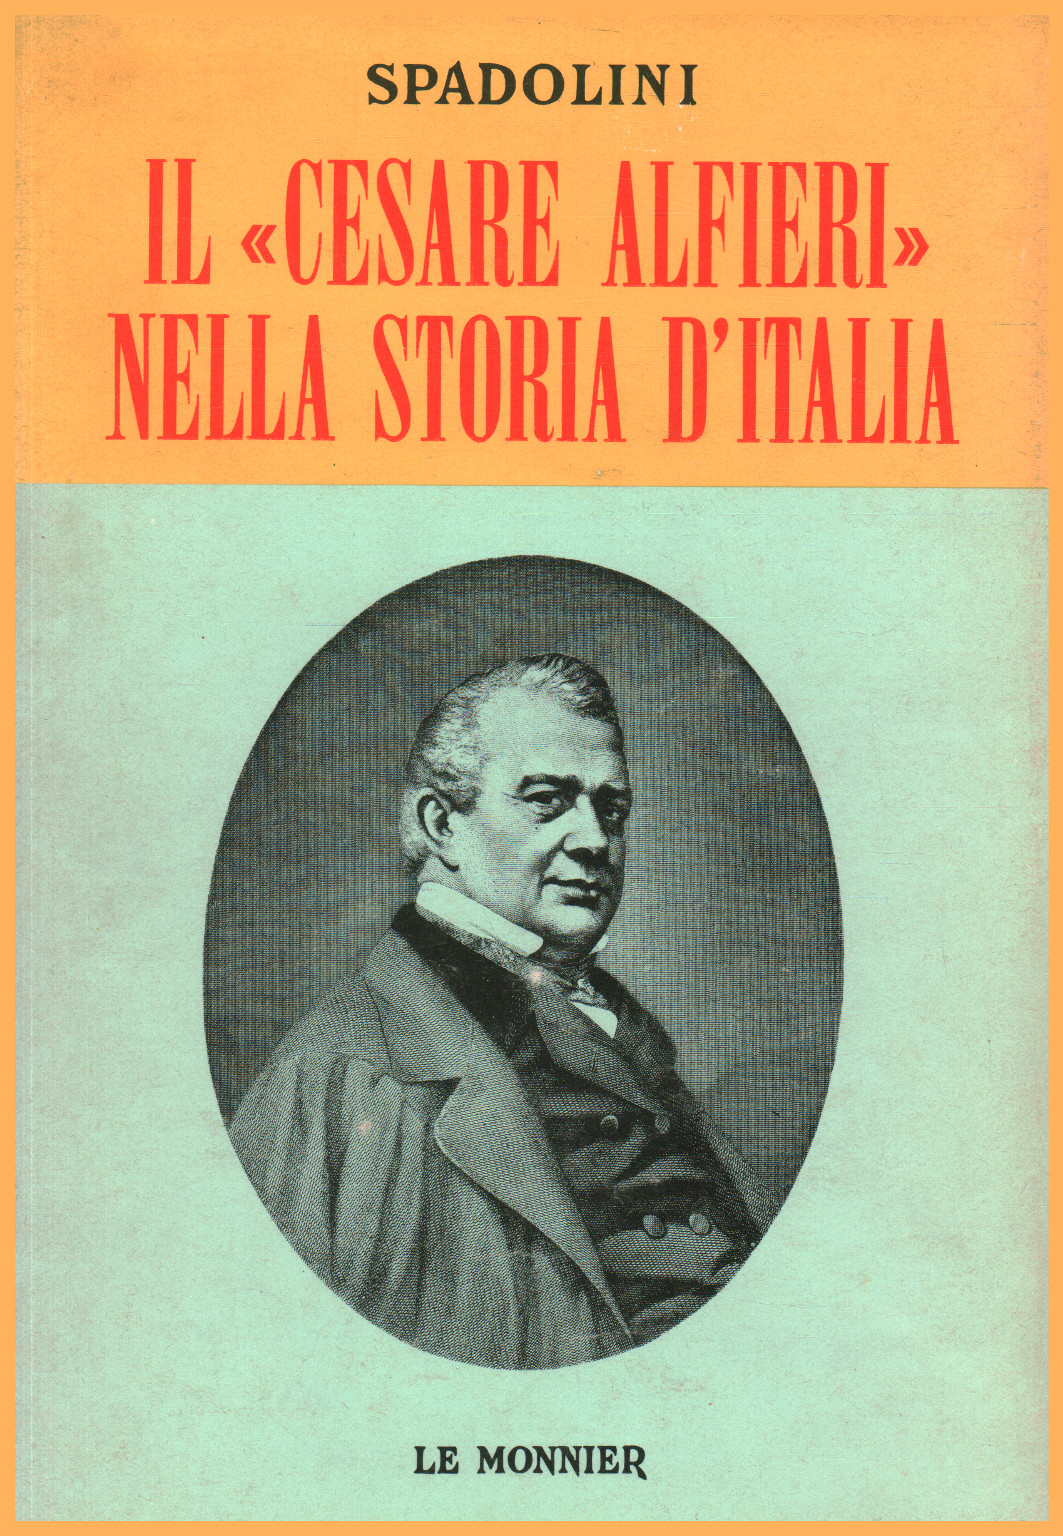 El "Cesare Alfieri" en la historia de Italia, s.a.